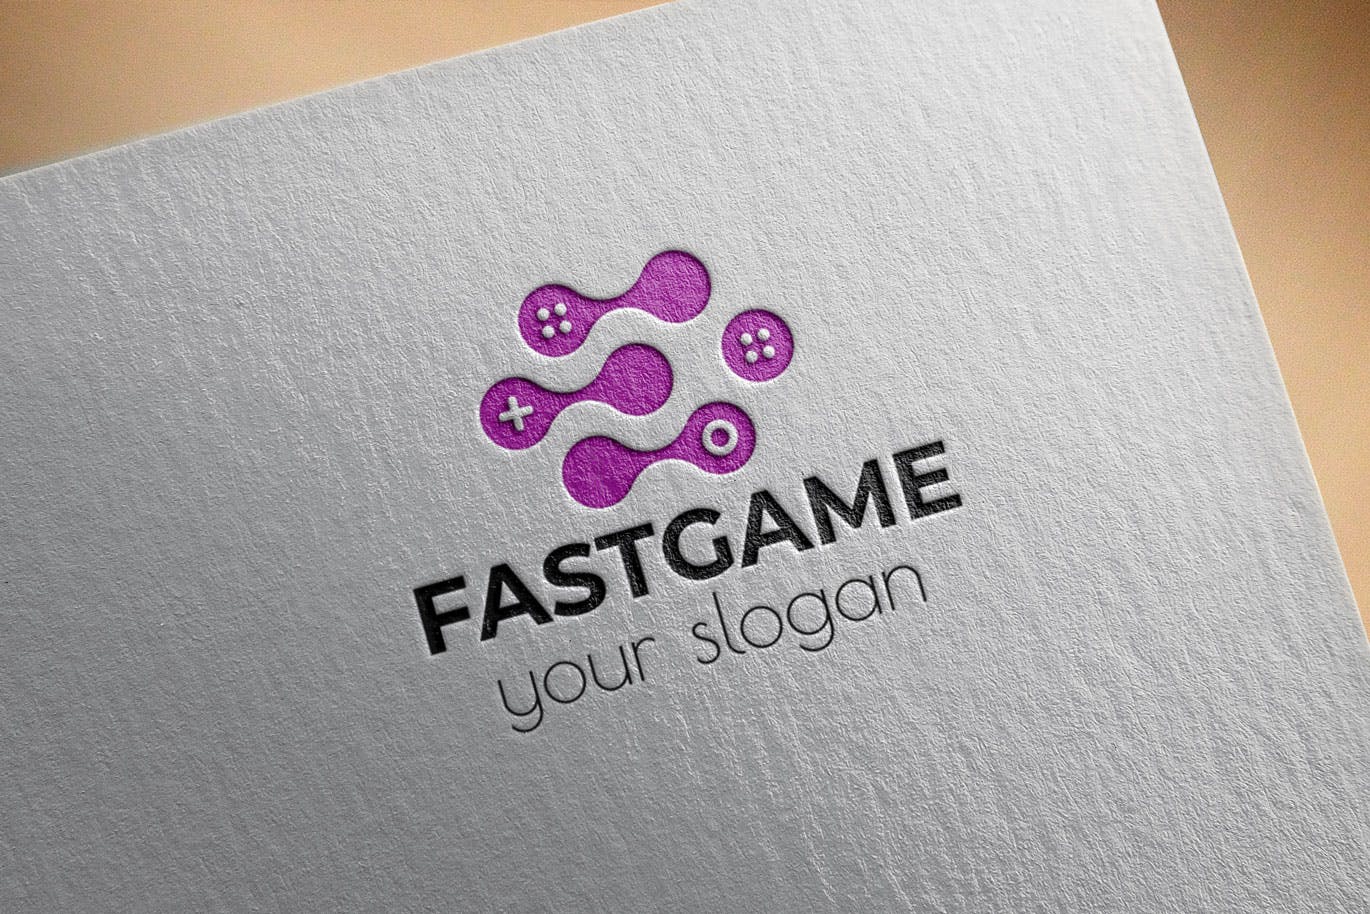 游戏加速器Logo设计第一素材精选模板 Fast Game Business Logo Template插图(2)